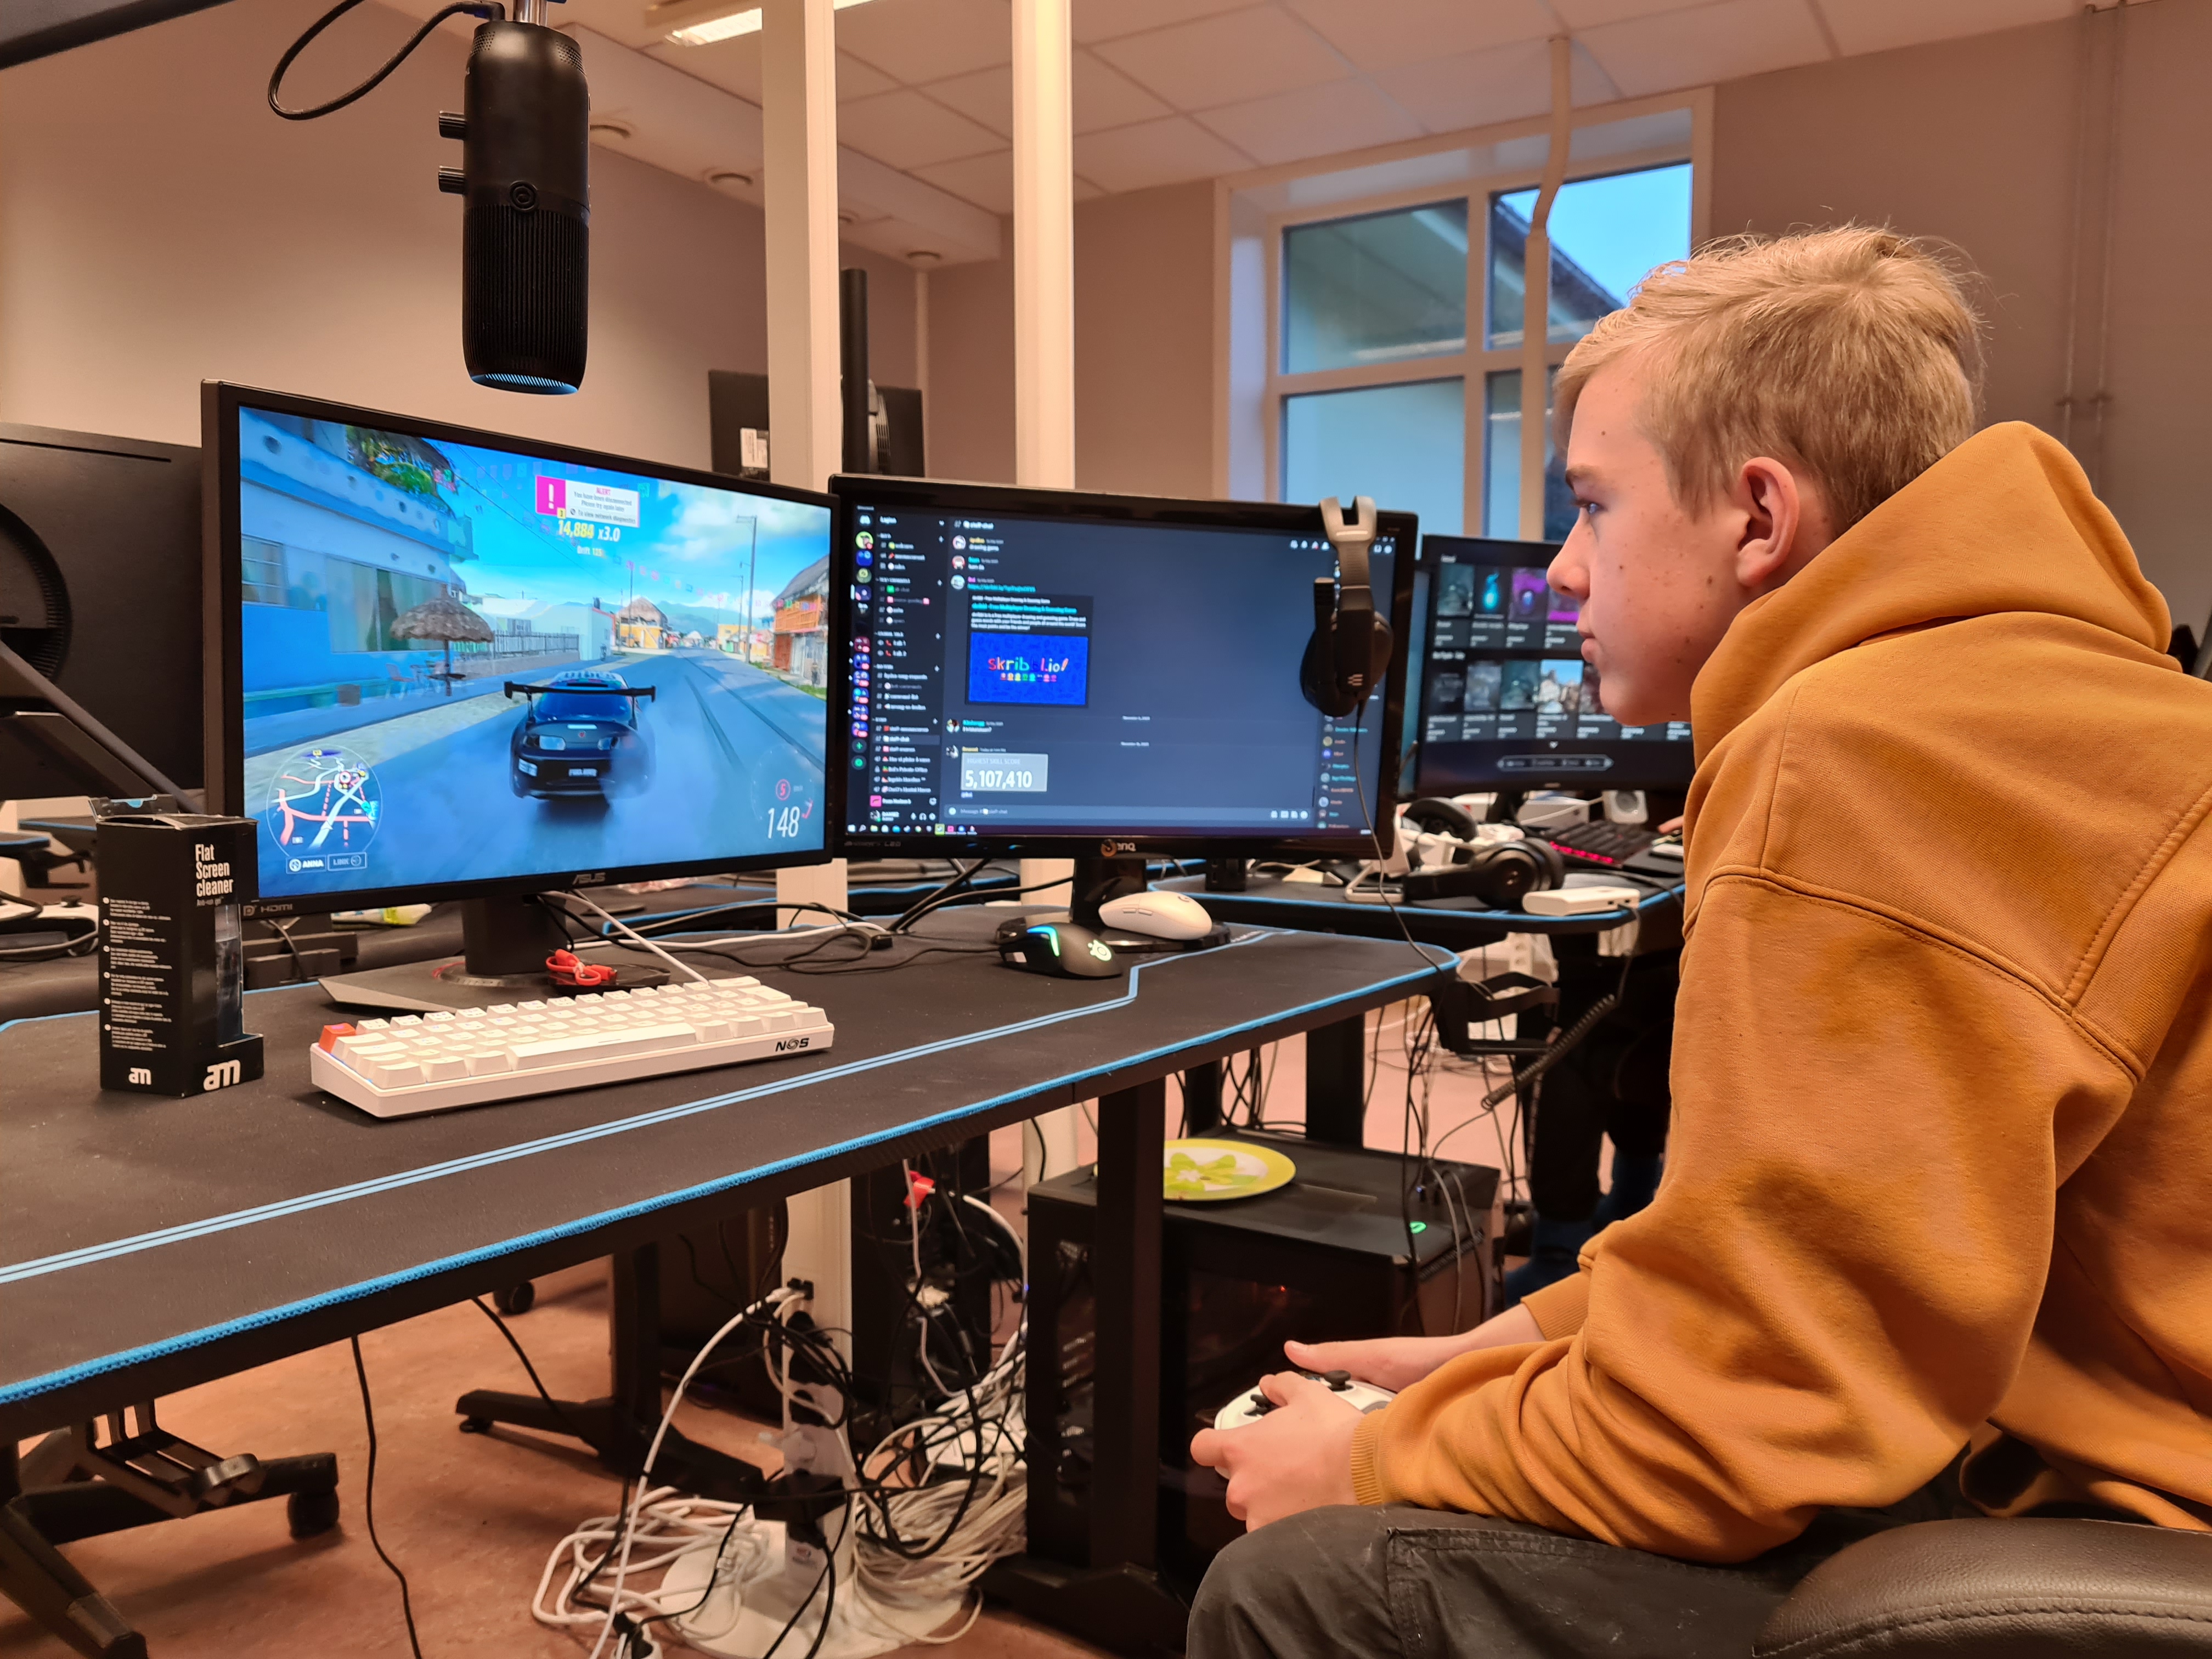 Vetle Øverland foran flere pc-skjermer, med spillkonsollen i hendene